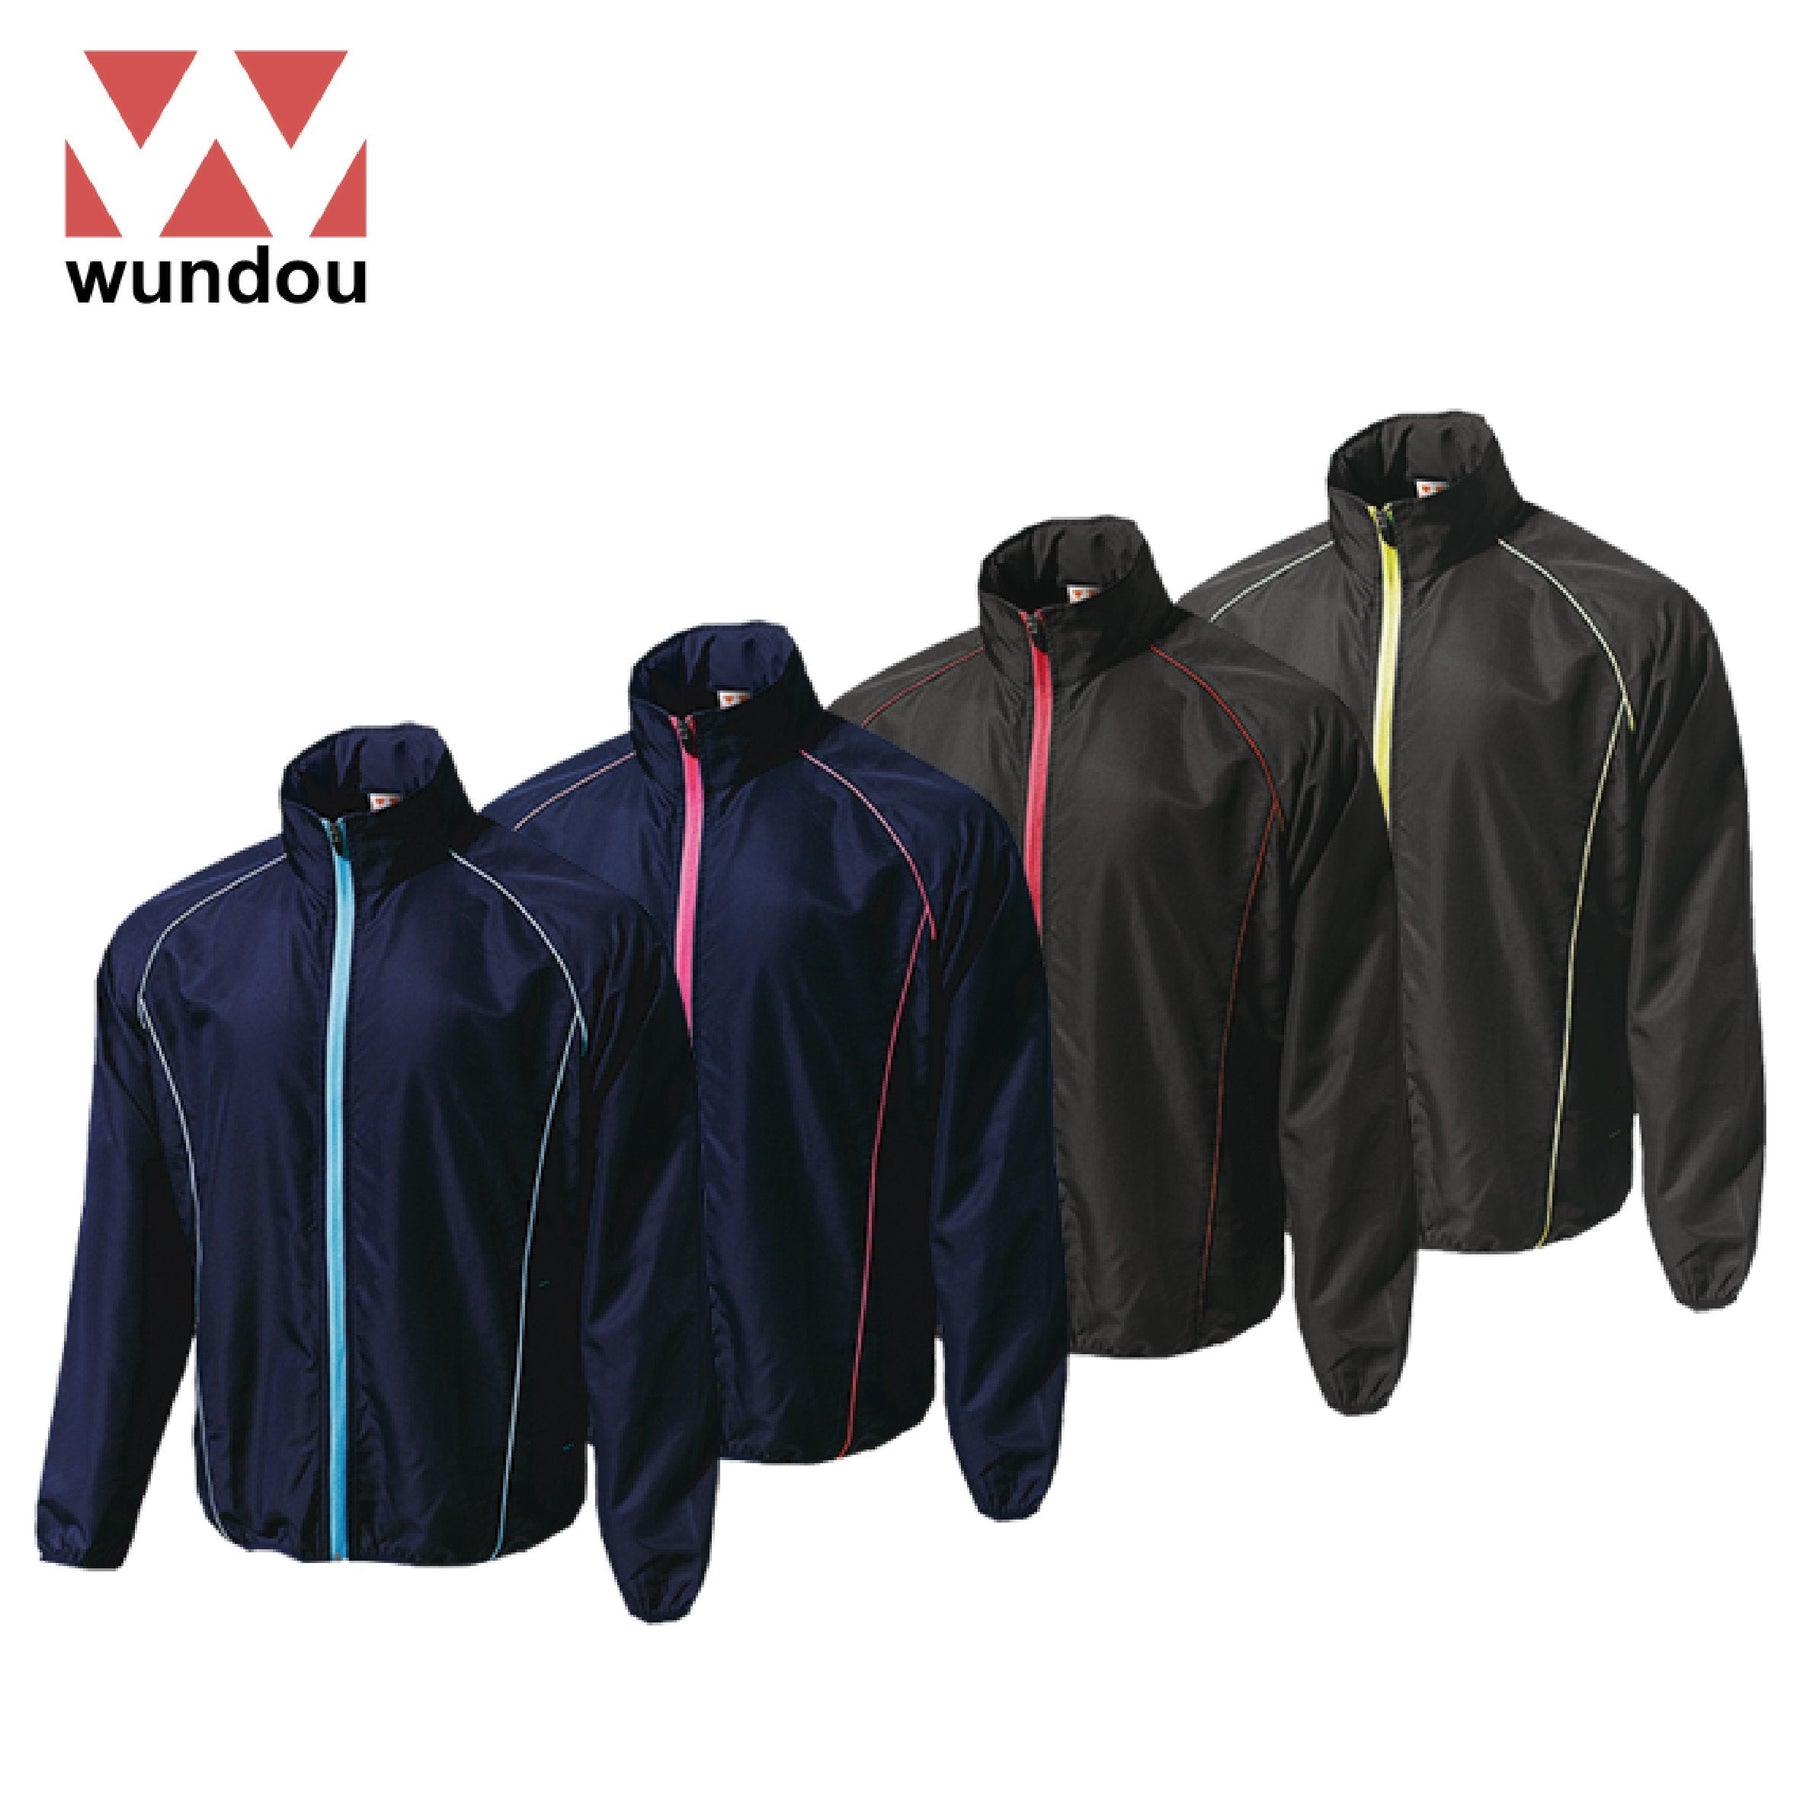 Wundou P4800 Warm-Up Windbreaker Jacket